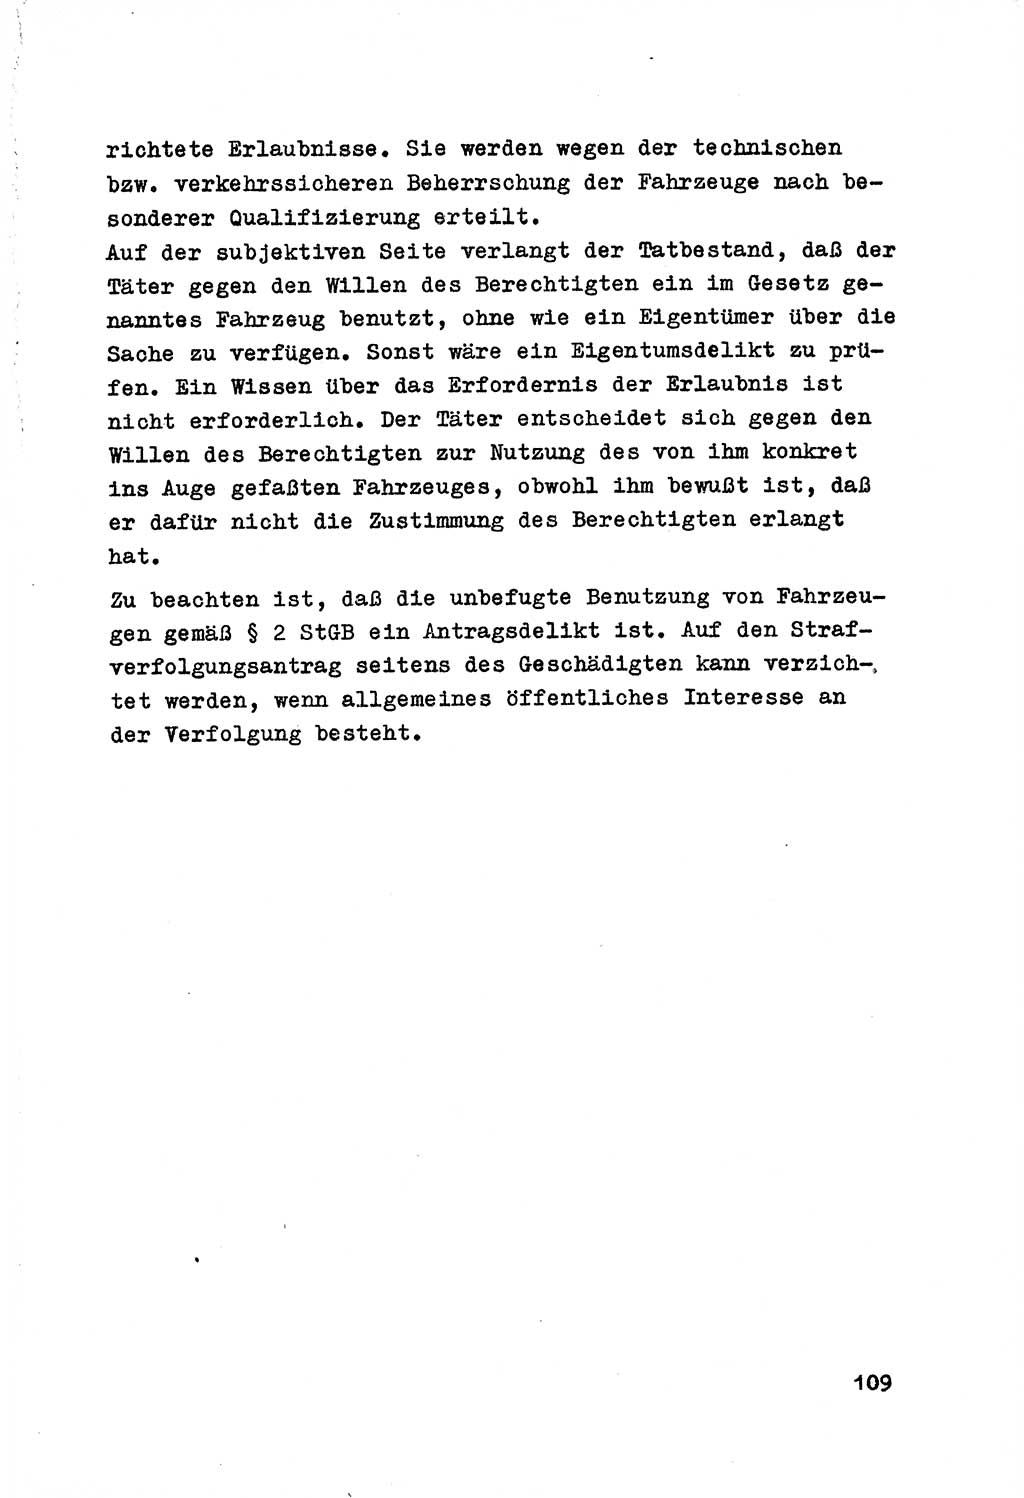 Strafrecht der DDR (Deutsche Demokratische Republik), Besonderer Teil, Lehrmaterial, Heft 7 1970, Seite 109 (Strafr. DDR BT Lehrmat. H. 7 1970, S. 109)